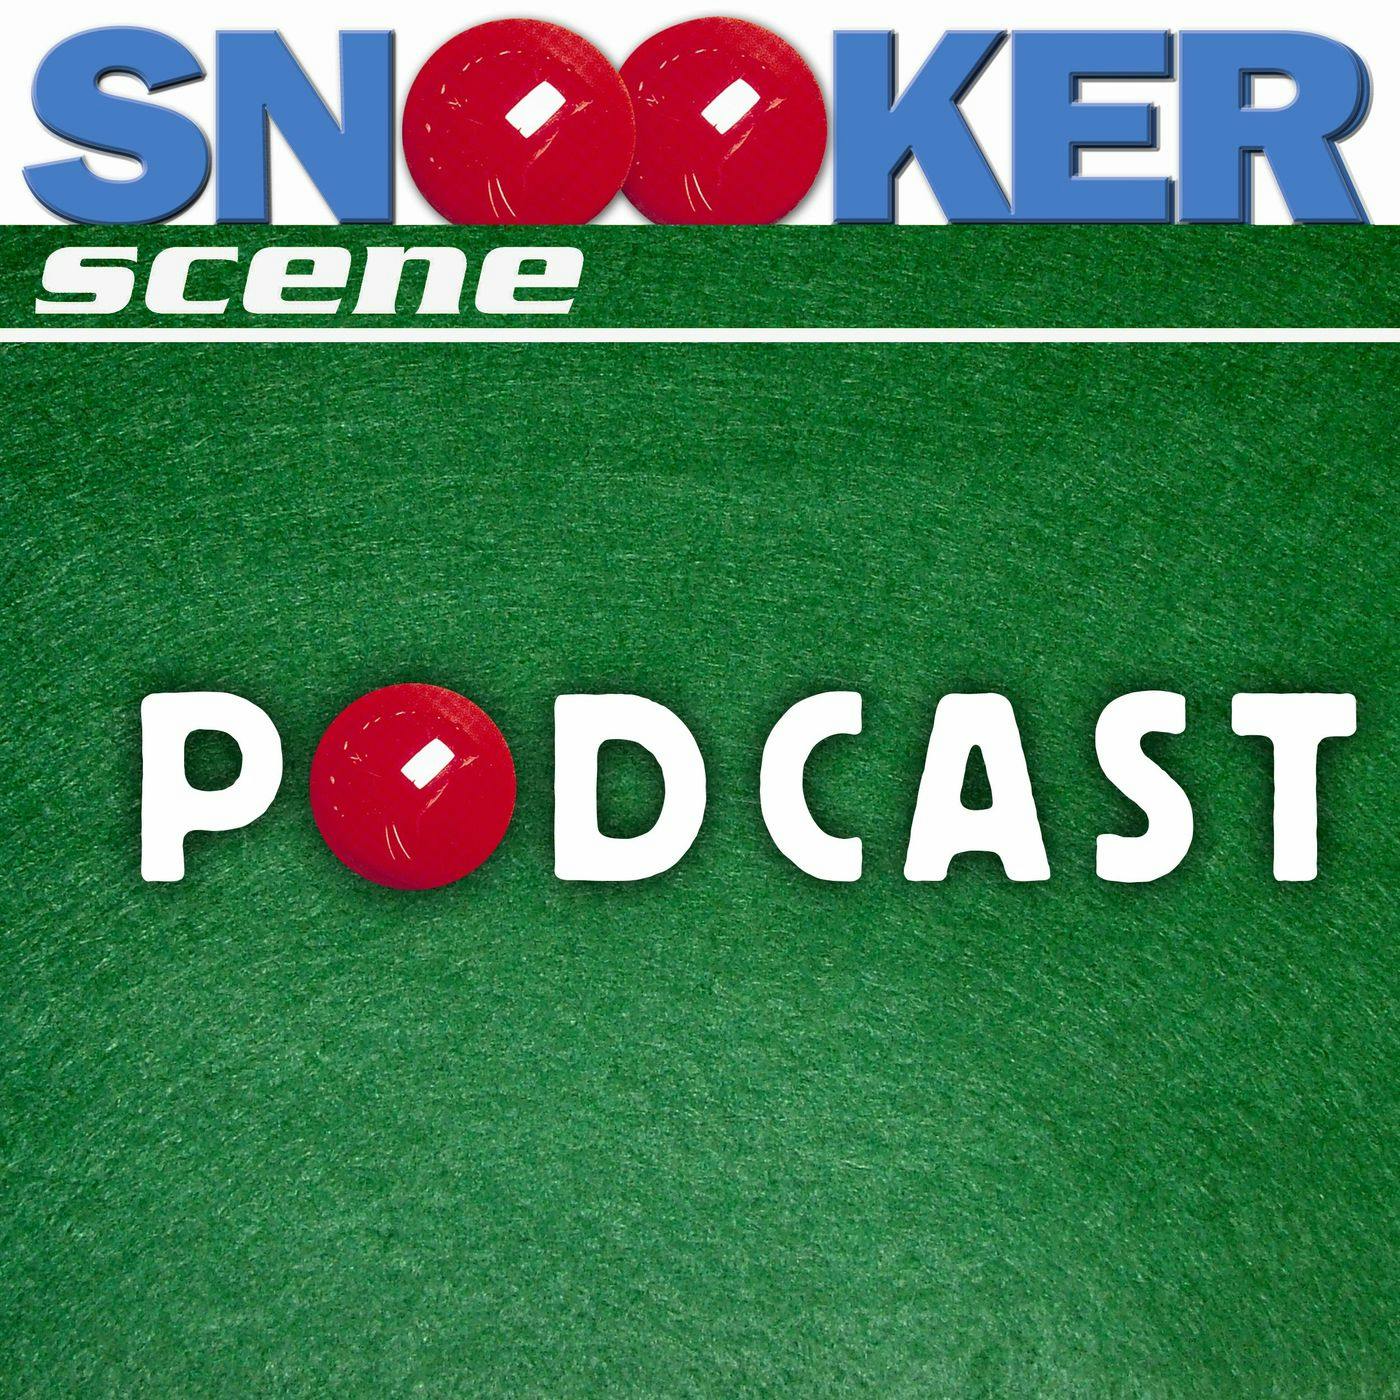 Snooker Scene Podcast episode 123 - Stephen Hendry returns